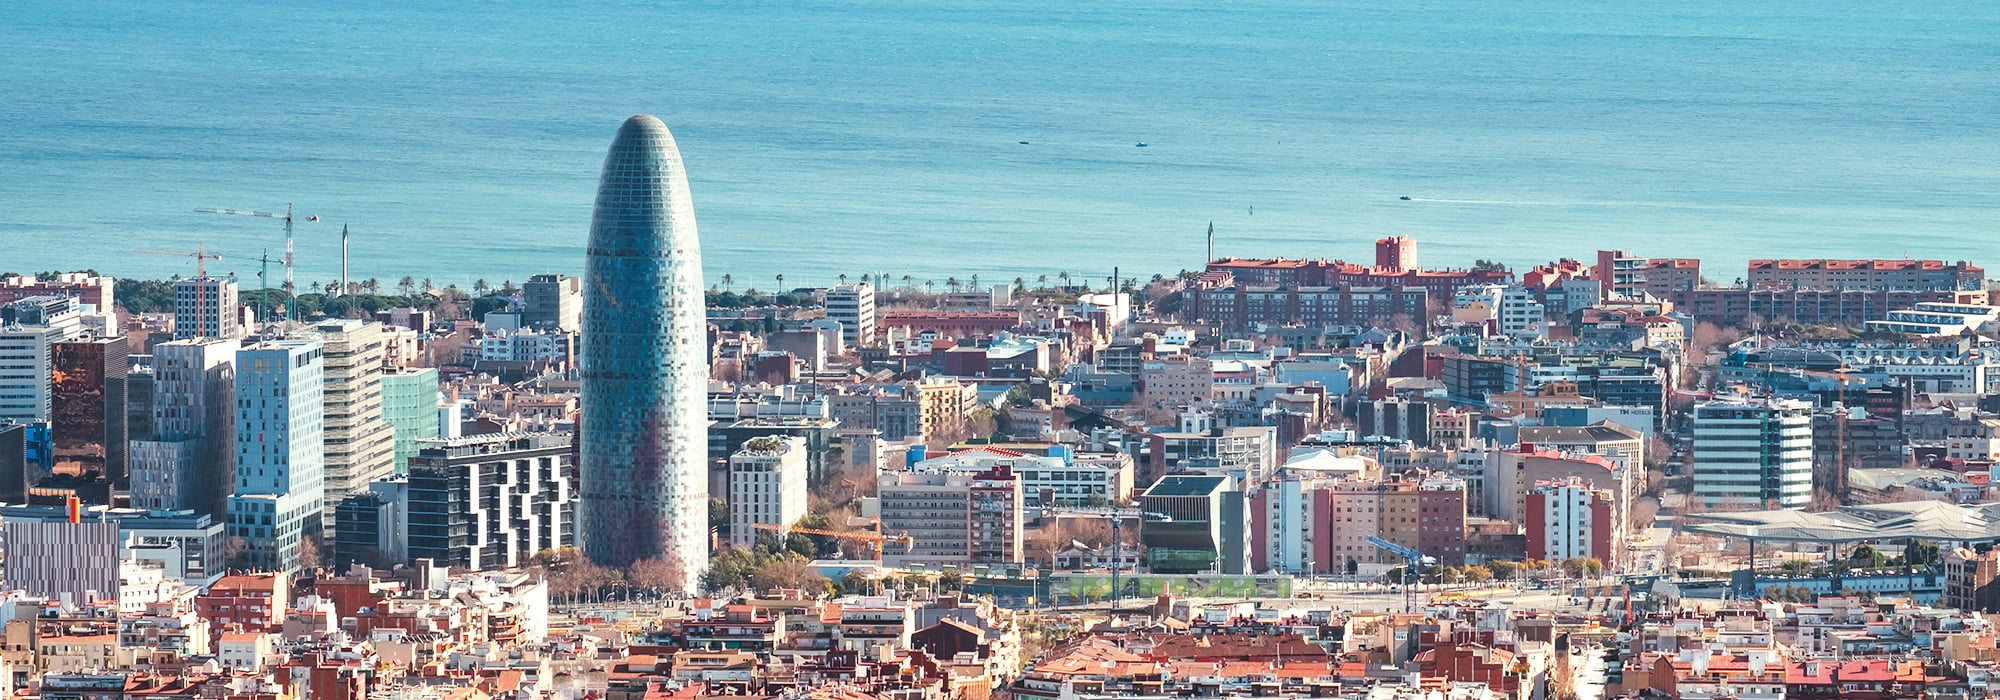 Torre Glories in Barcelona